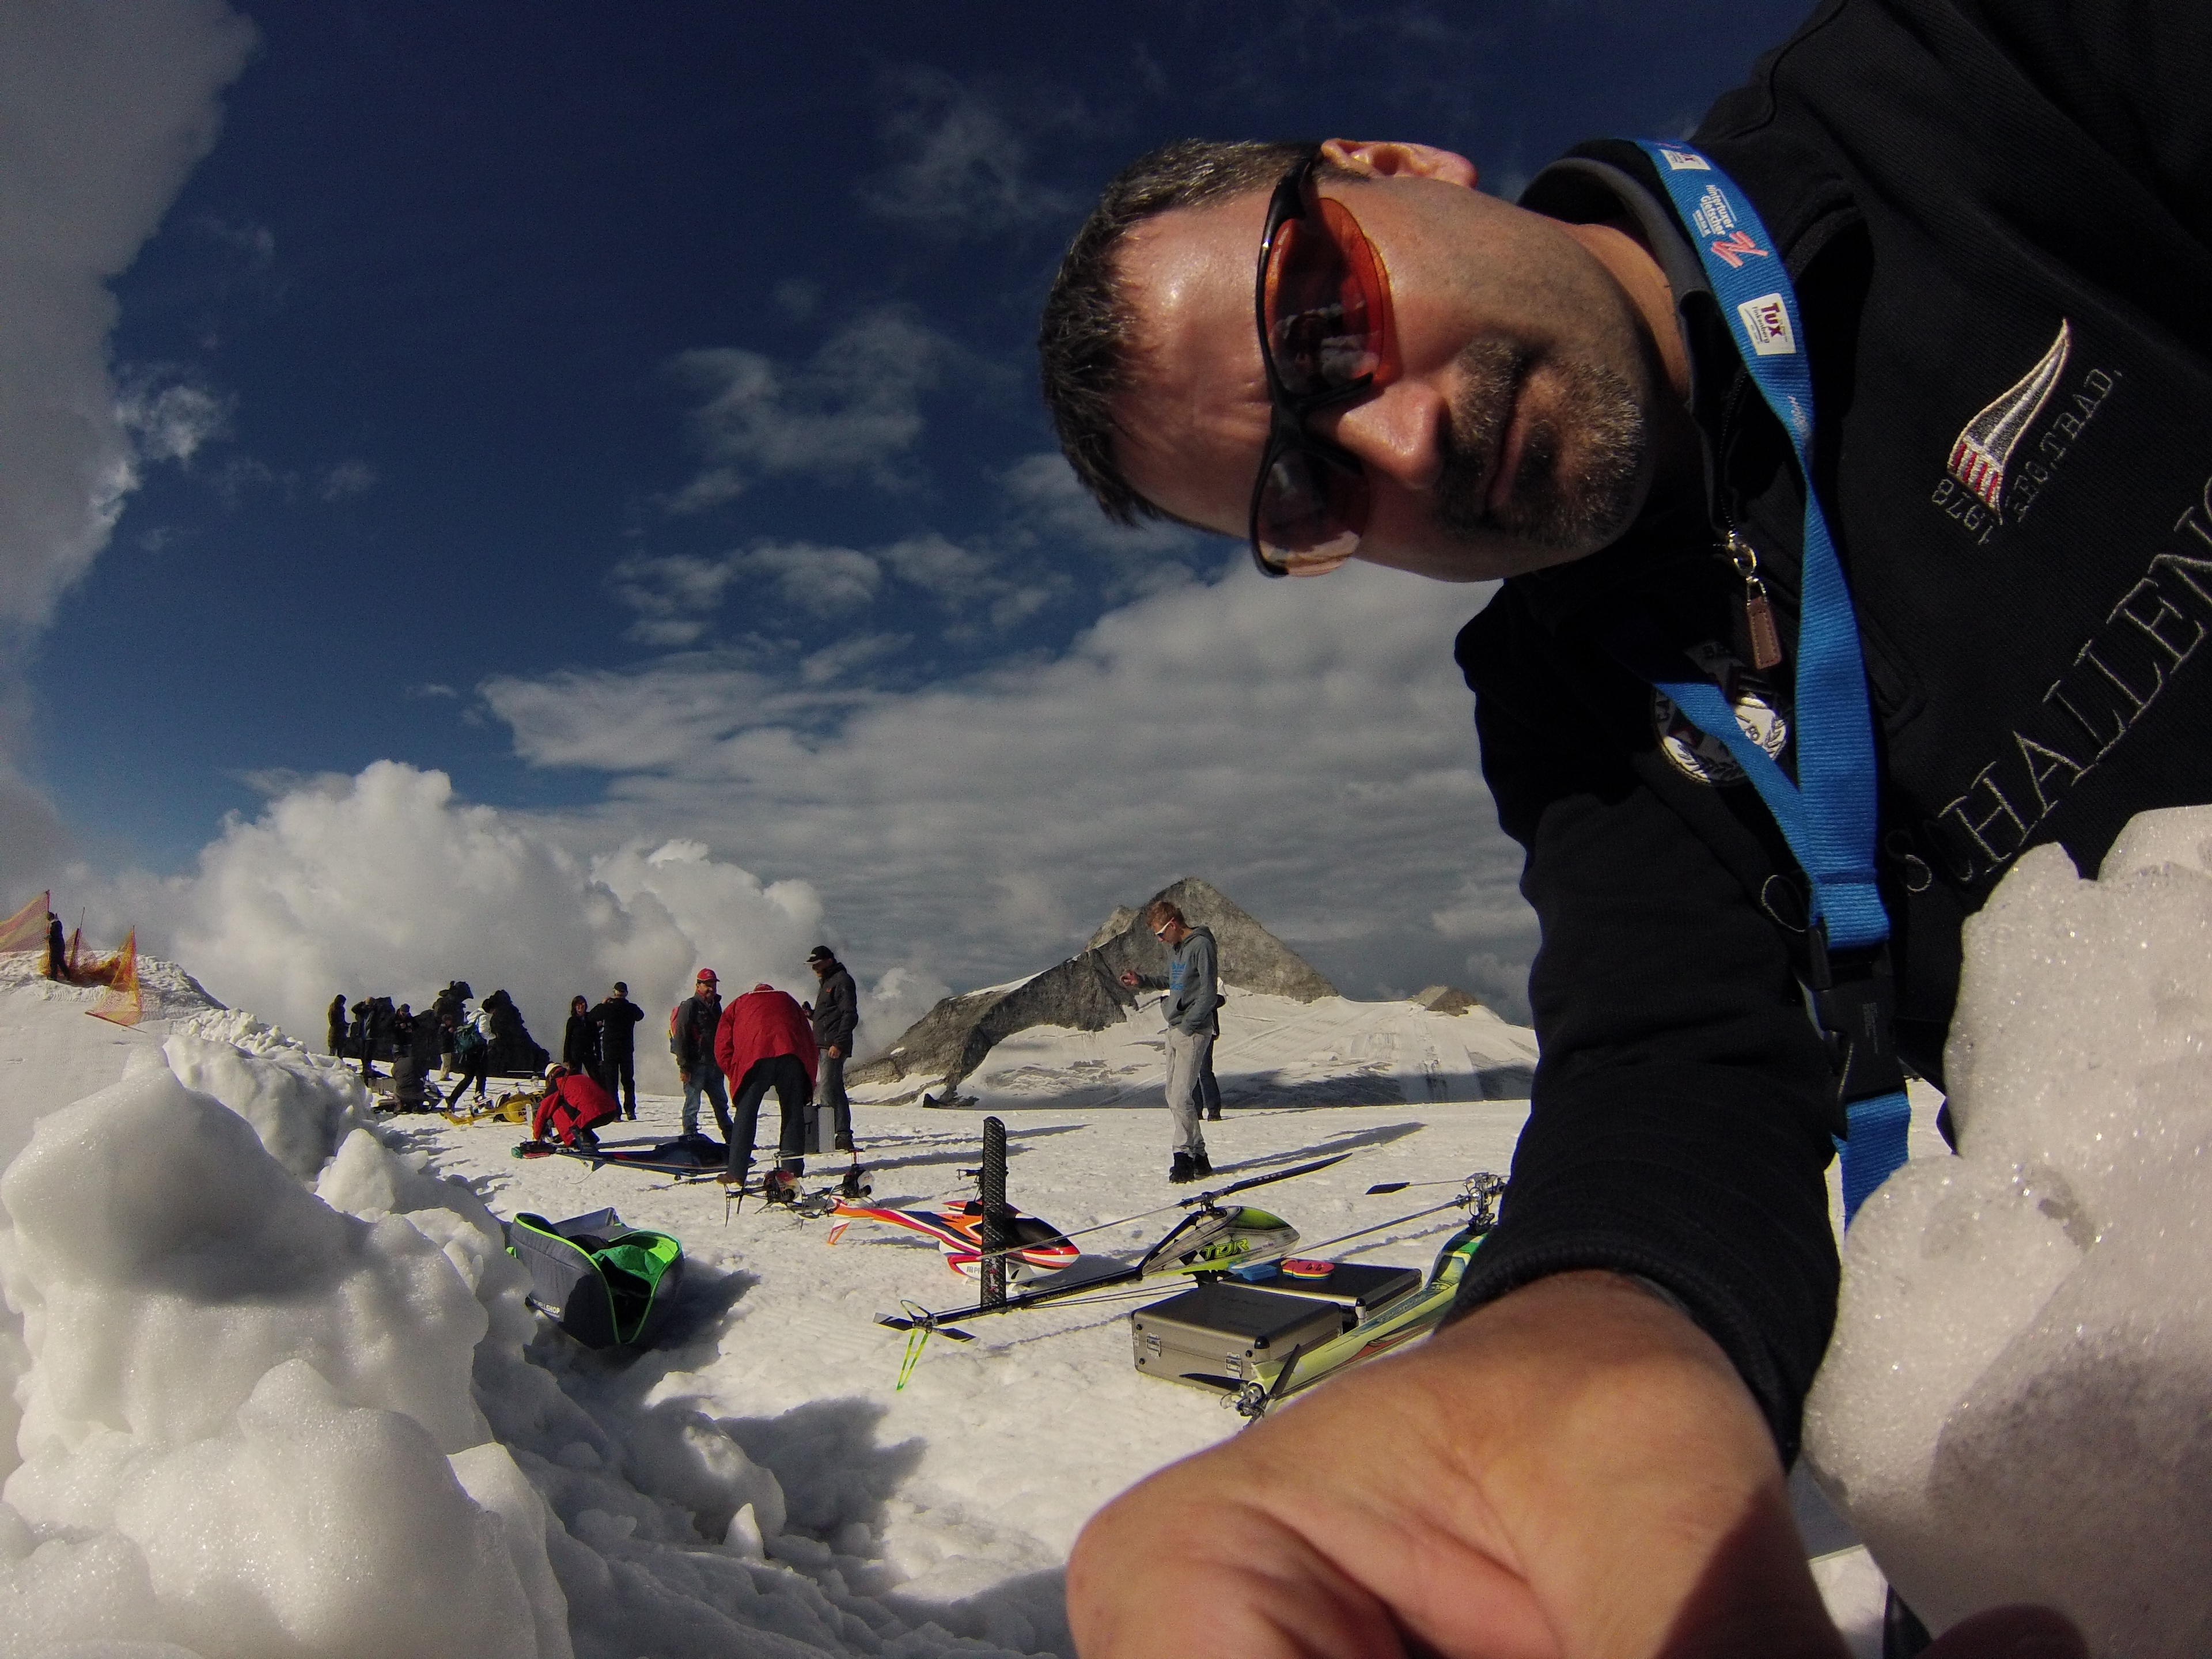 Roland aktiviert gerade die GoPro am Hintertuxer Gletscher beim Gletscherfliegen 2013.